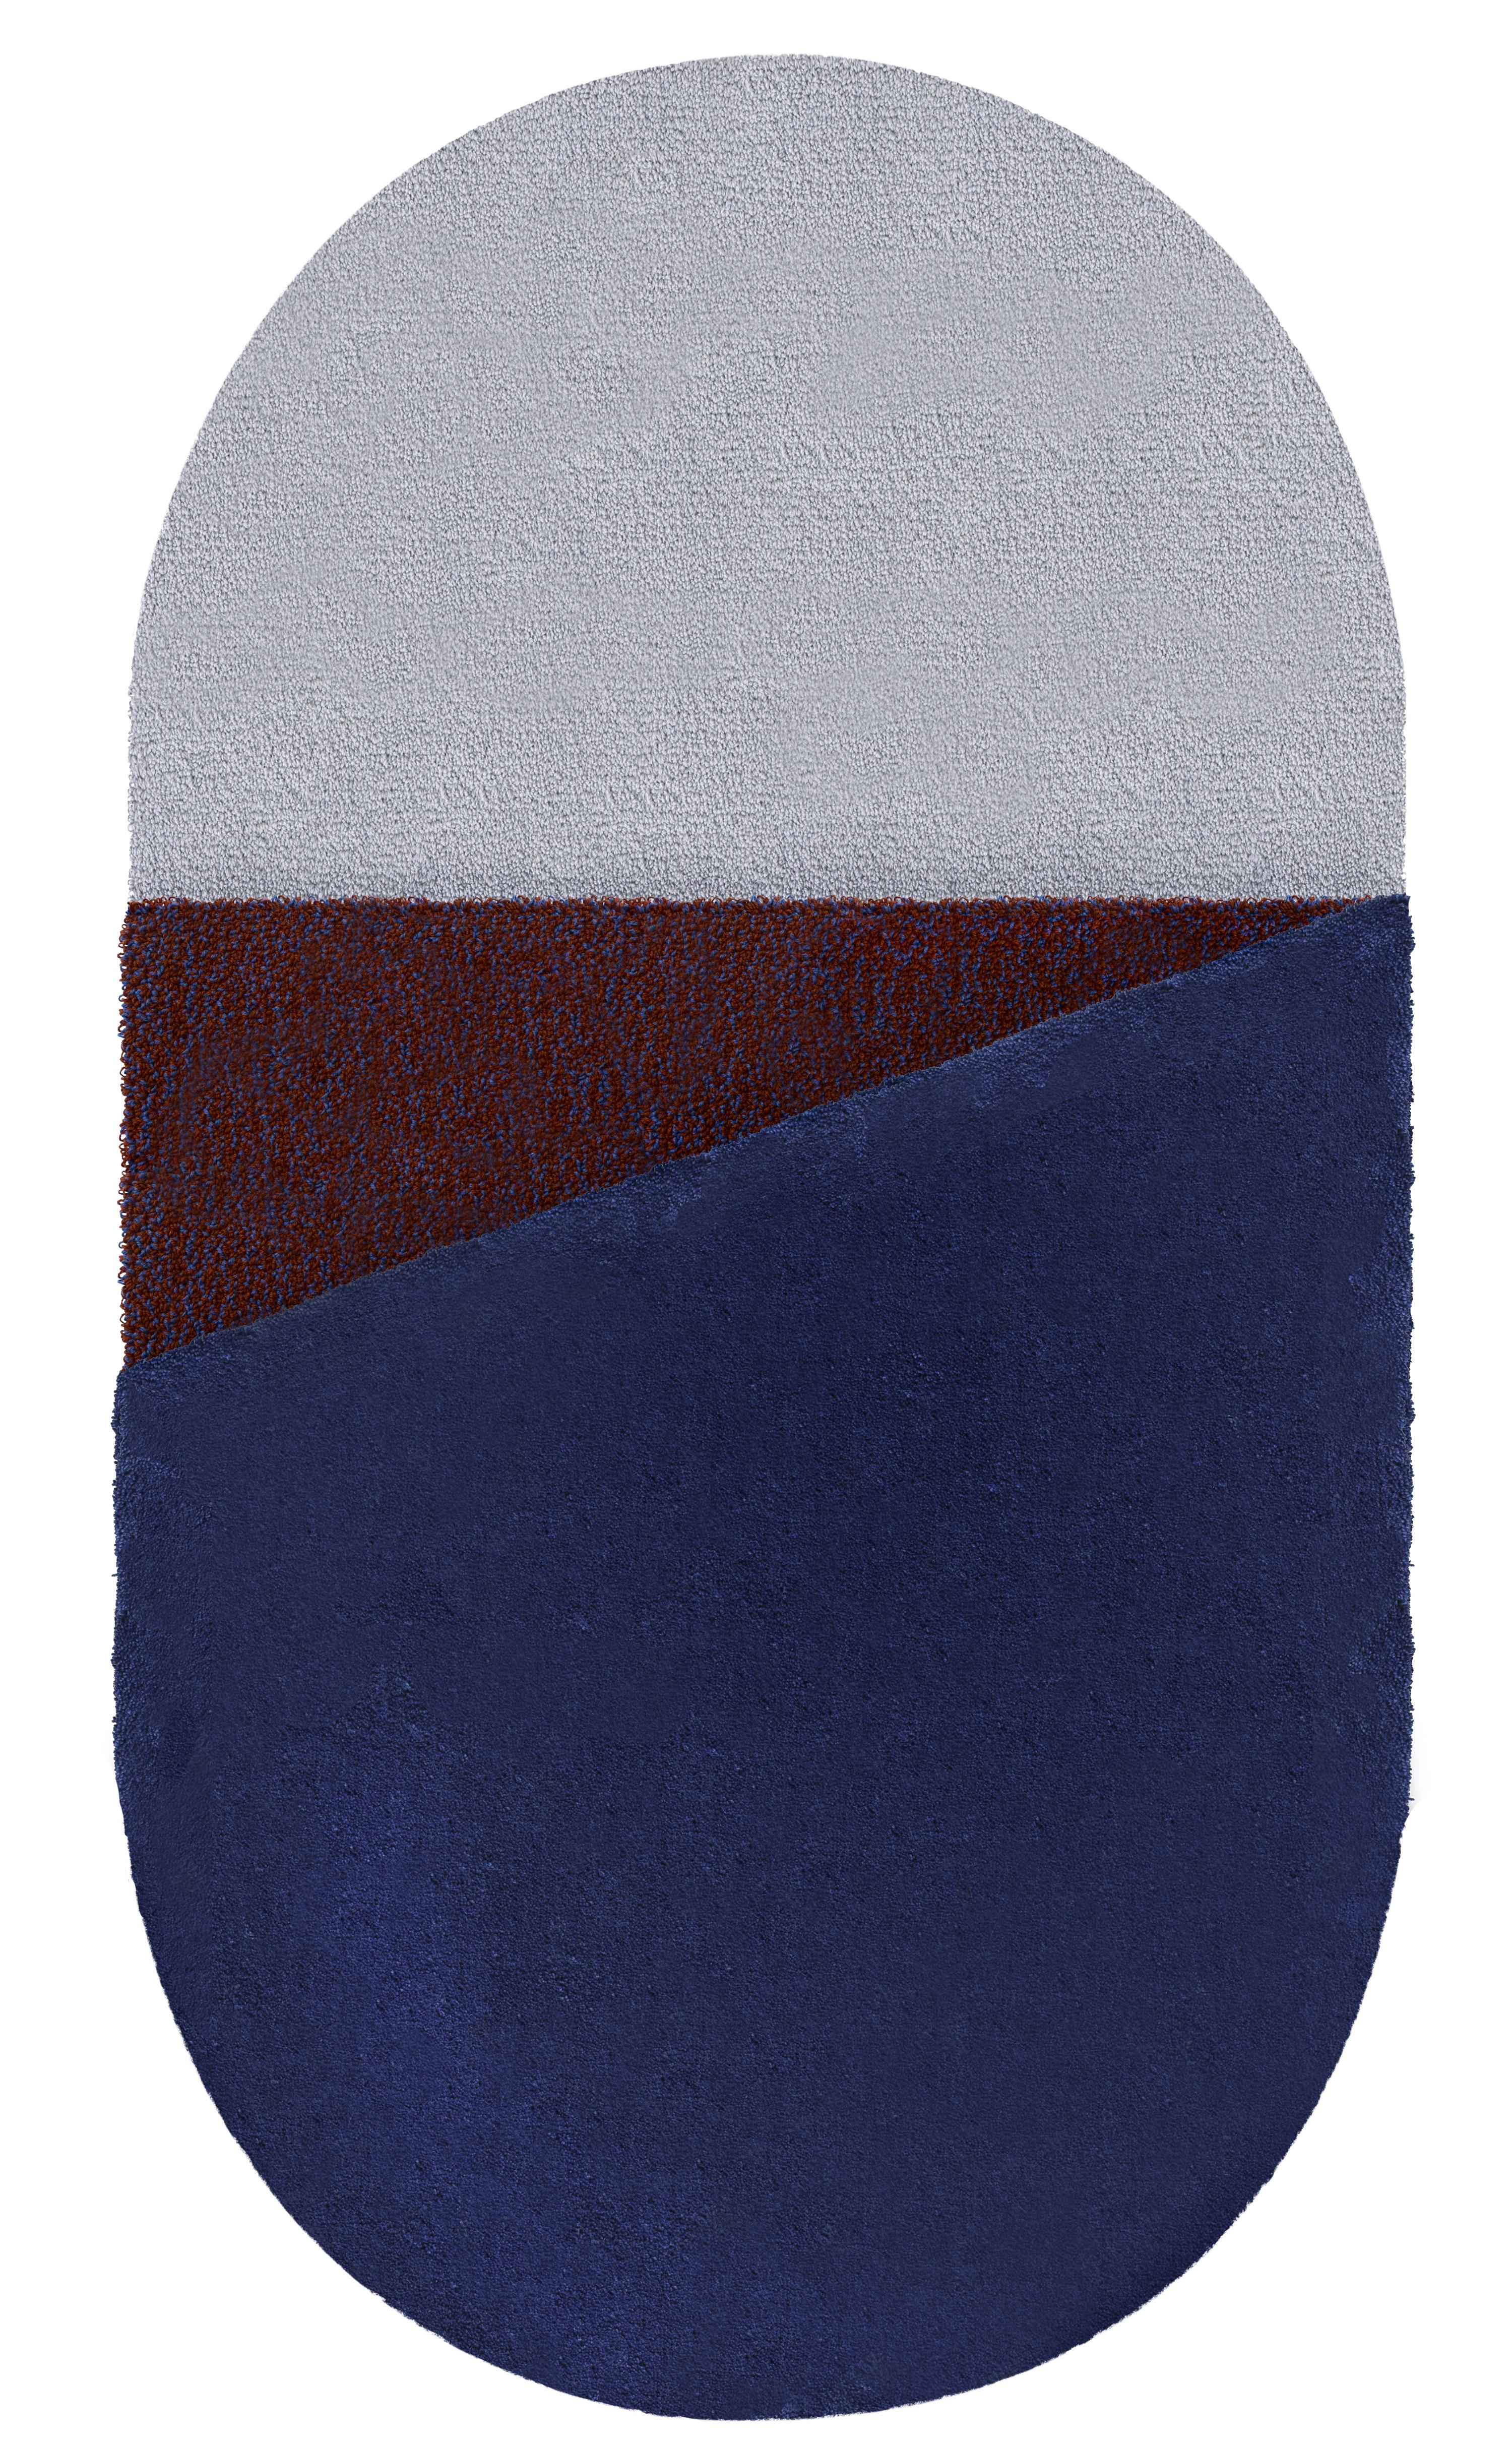 Mittelblauer teppich oci rechts von Seraina Lareida
Abmessungen: B 110 x H 200 cm 
MATERIALIEN: 100% New Zeland Wolle bester Qualität.
Erhältlich in den Größen Small und Large. Auch in folgenden Farben erhältlich: Brick/Pink, Gelb/Grau, Brick/Pink,